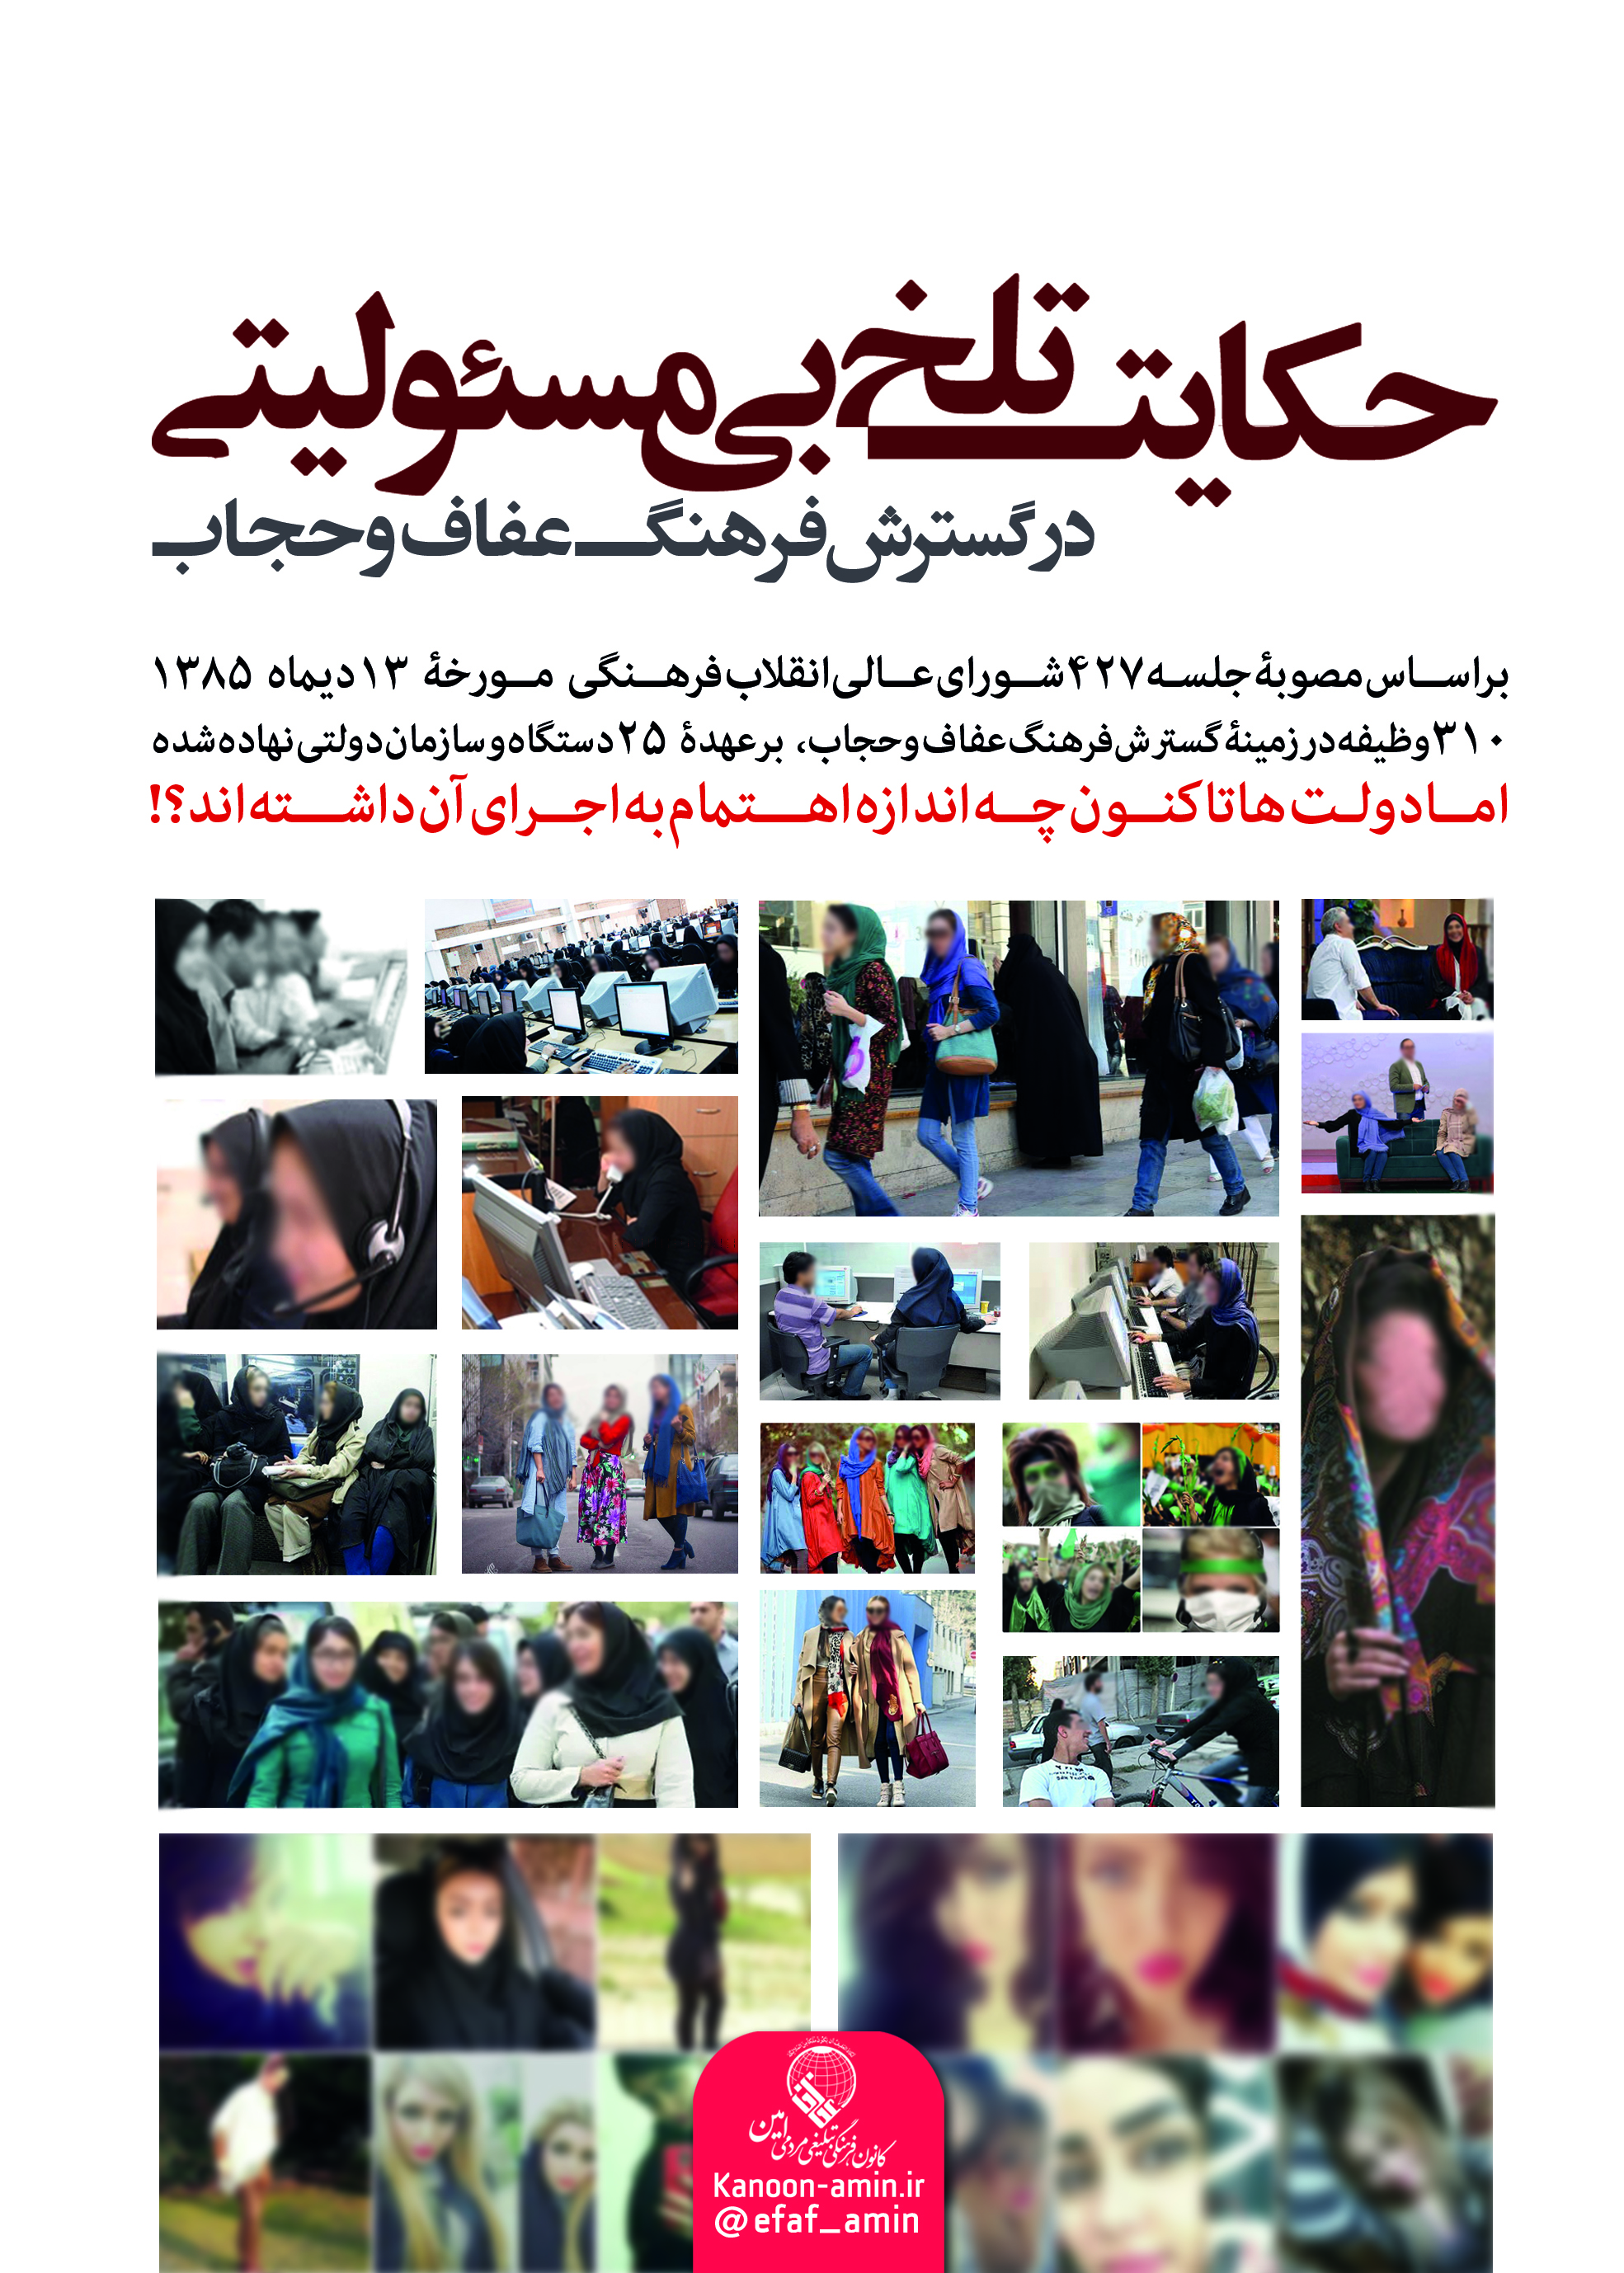 حکایت تلخ بی مسئولیتی در گسترش عفاف و حجاب (25 دستگاه دولتی و 310 وظیفه)